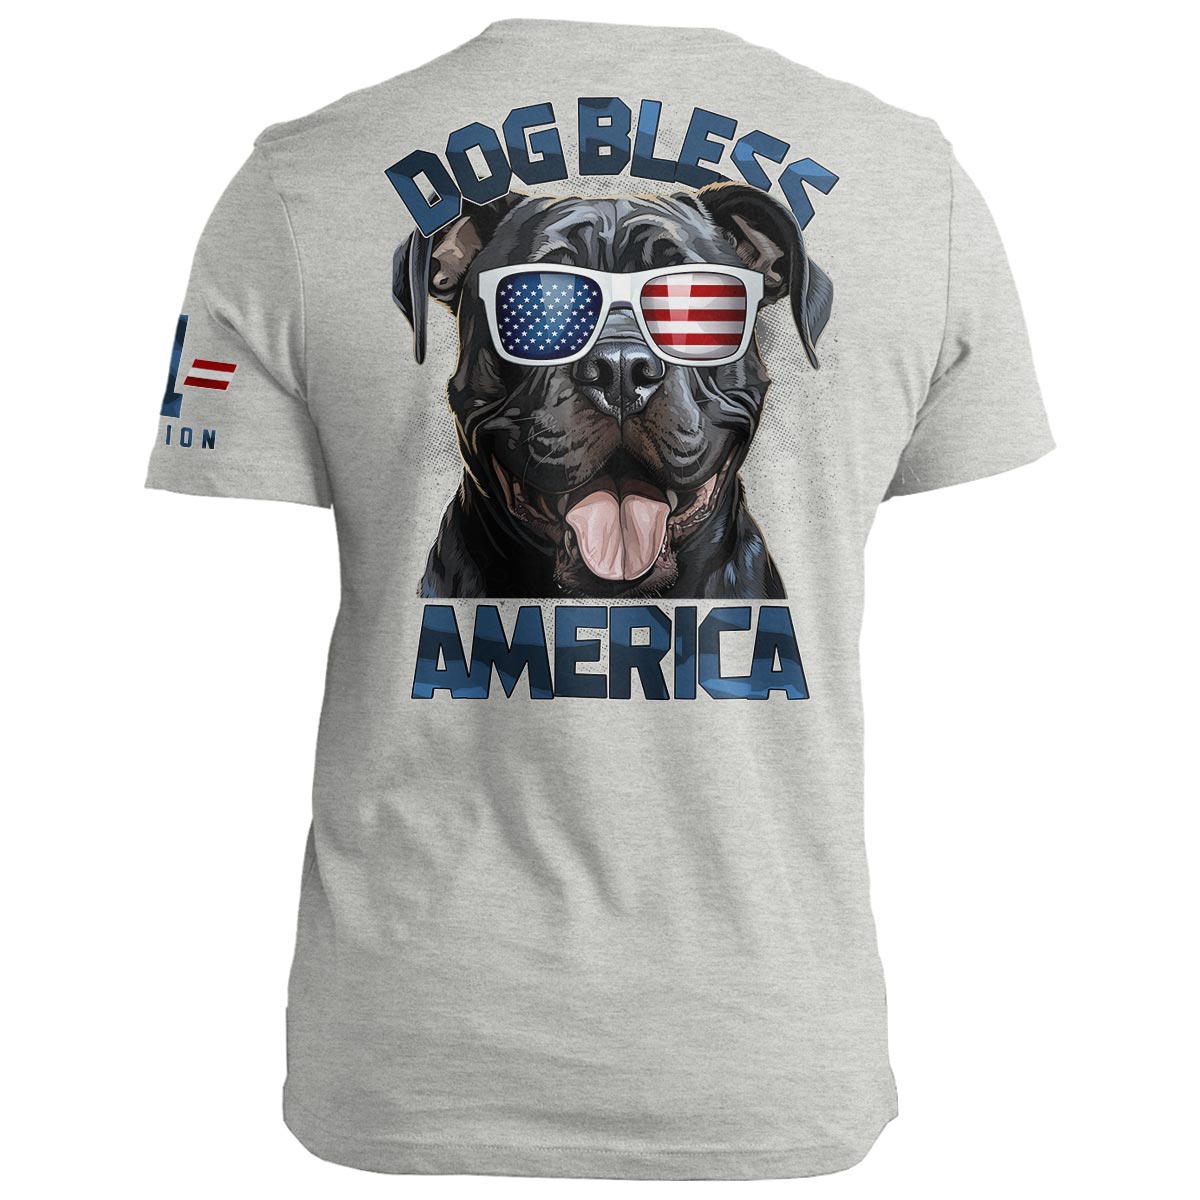 DOG Bless America: Cane Corso